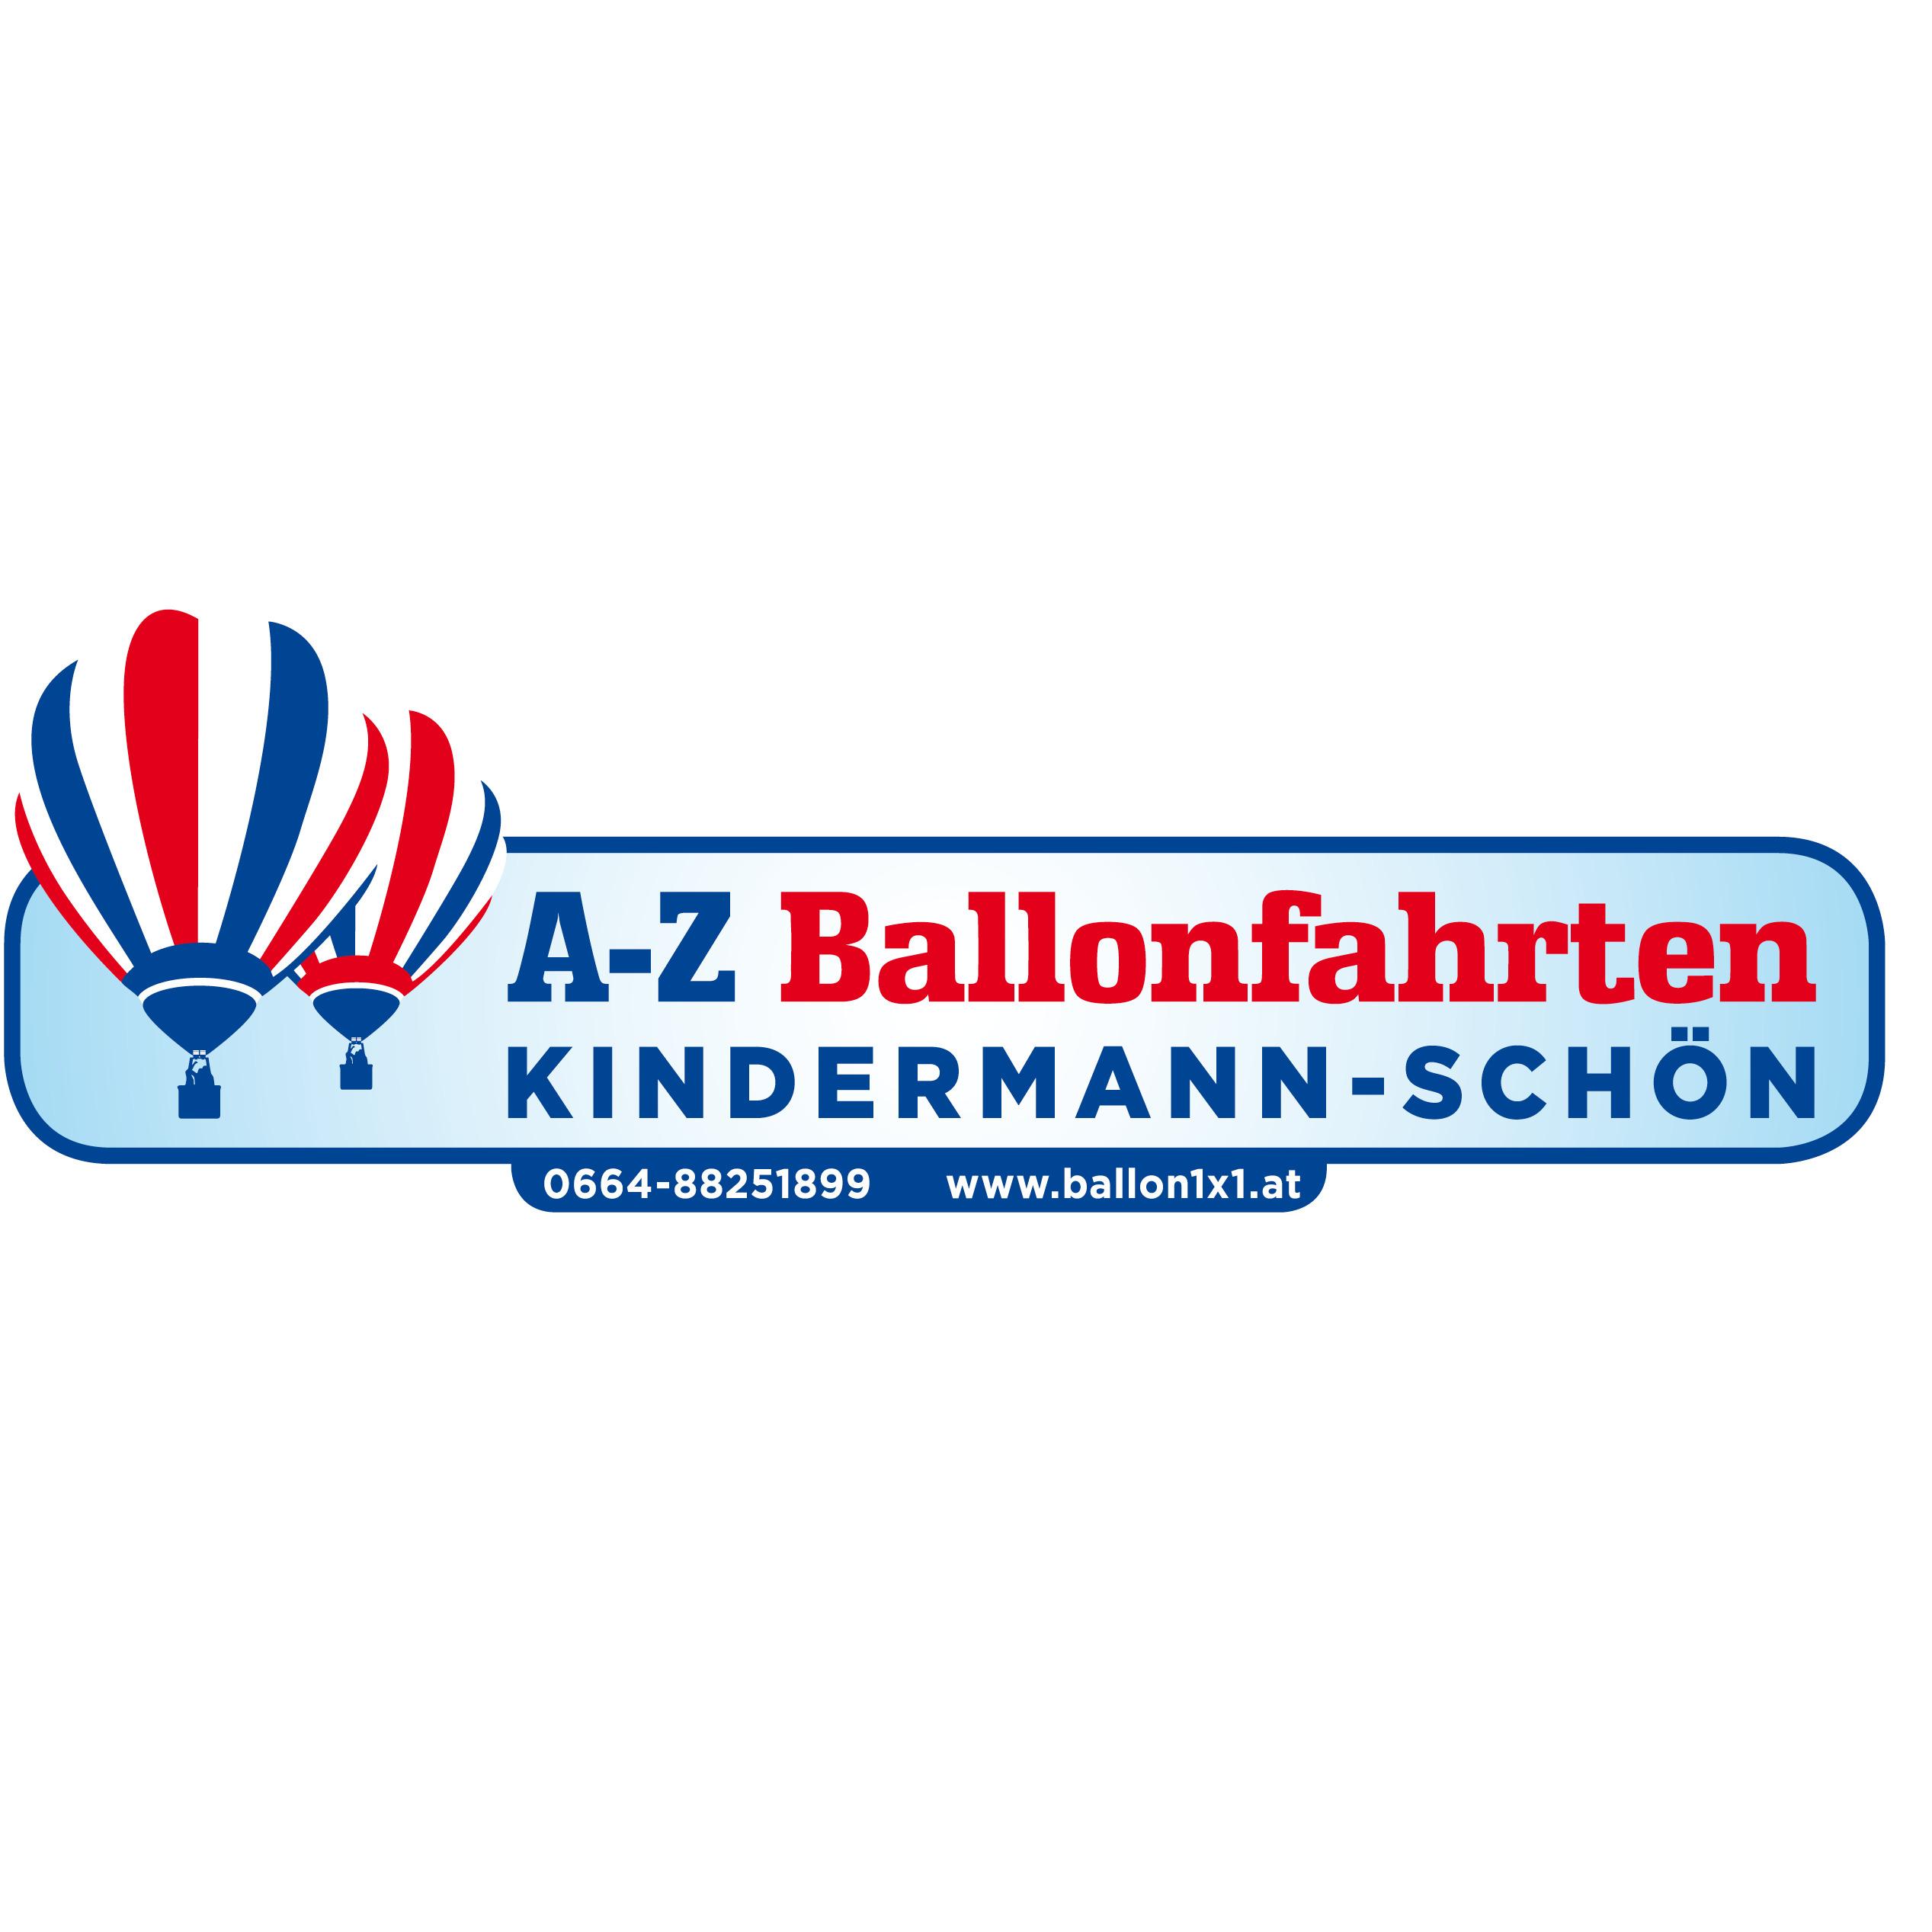 A-Z Ballonfahrten Kindermann-Schön KG in 8271 Bad Waltersdorf Logo